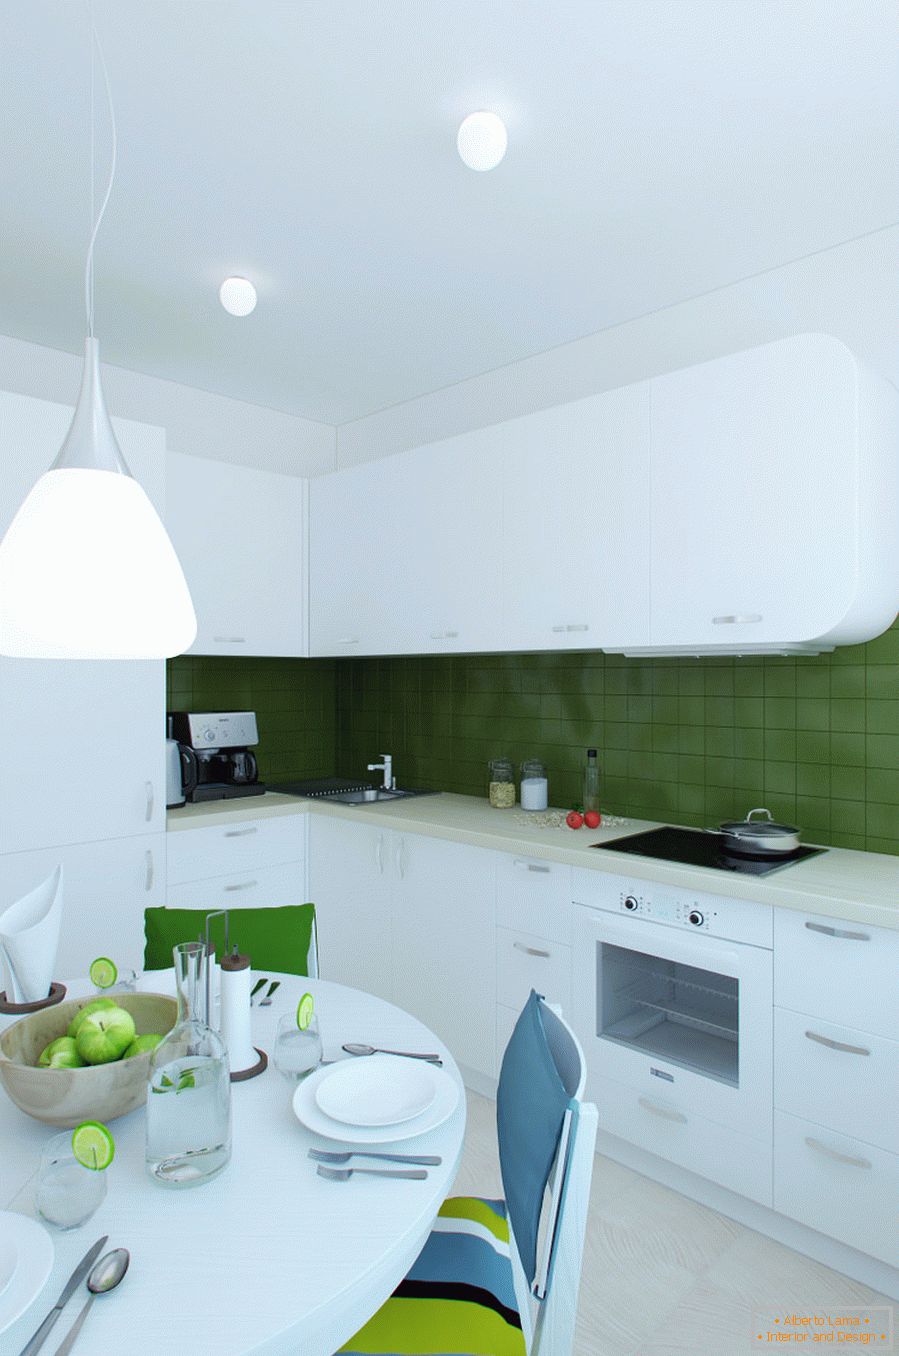 Notranjost kuhinje v beli in zeleni barvi